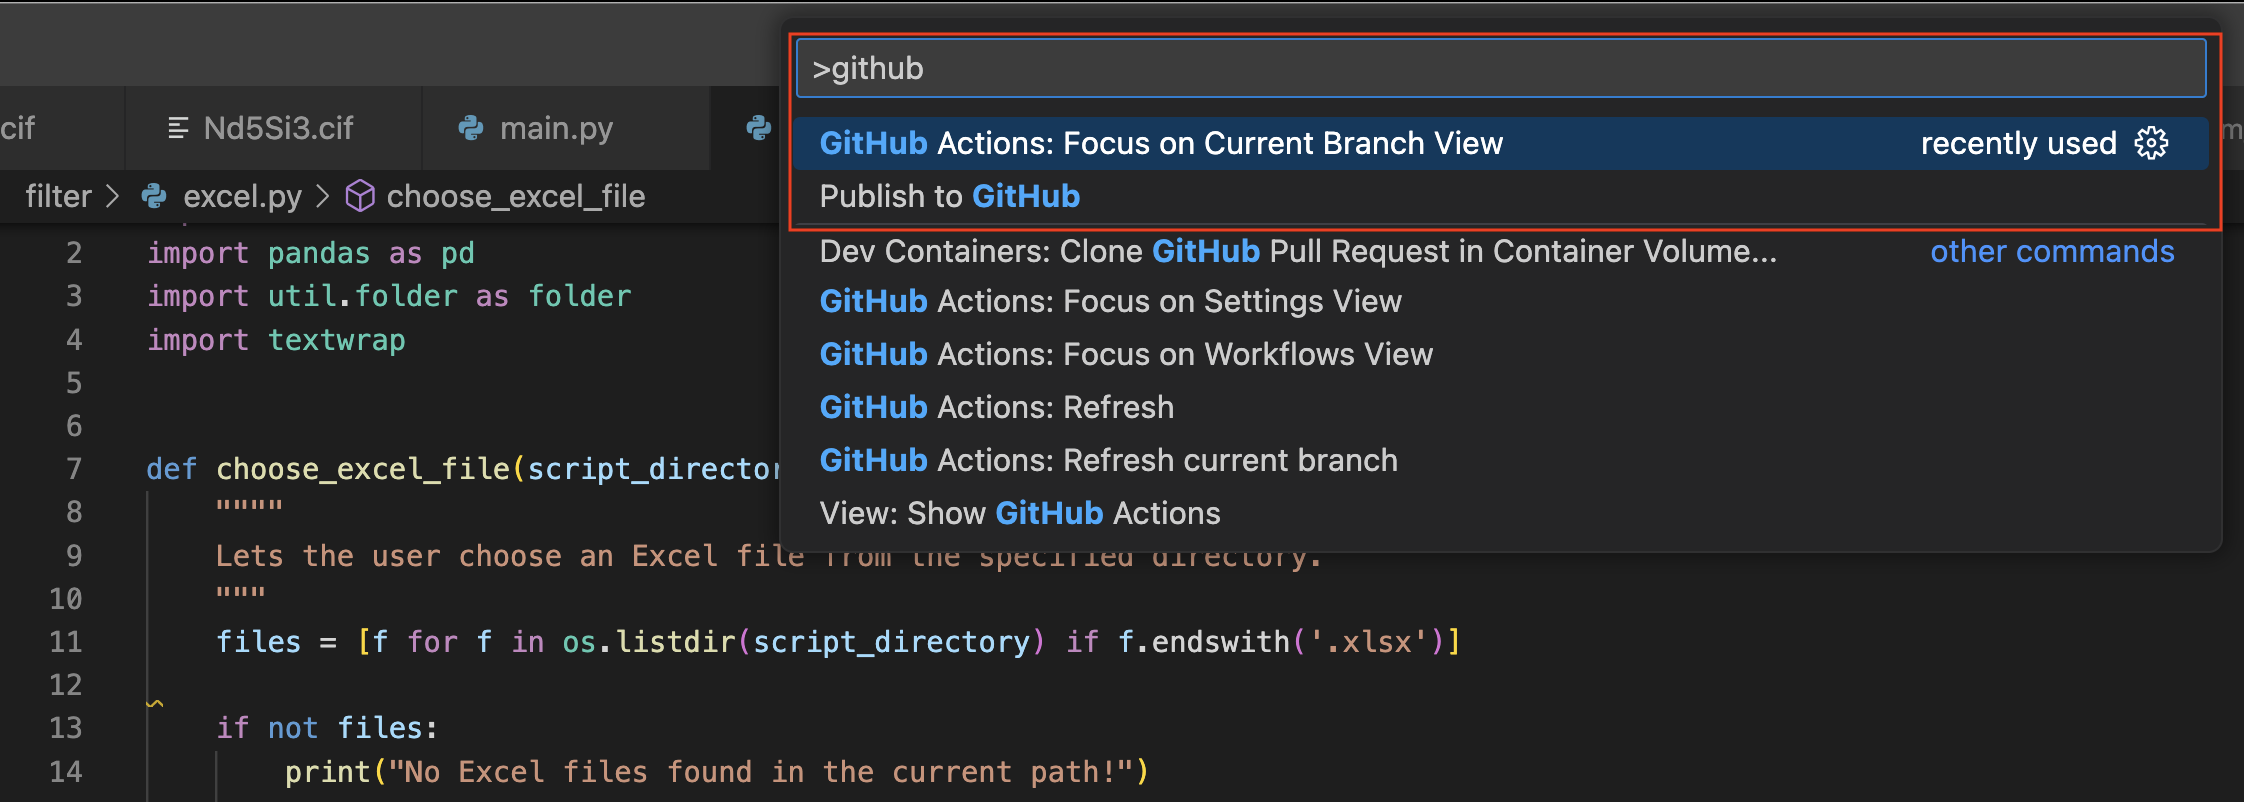 Image 3 - GitHub Actions on shift-p